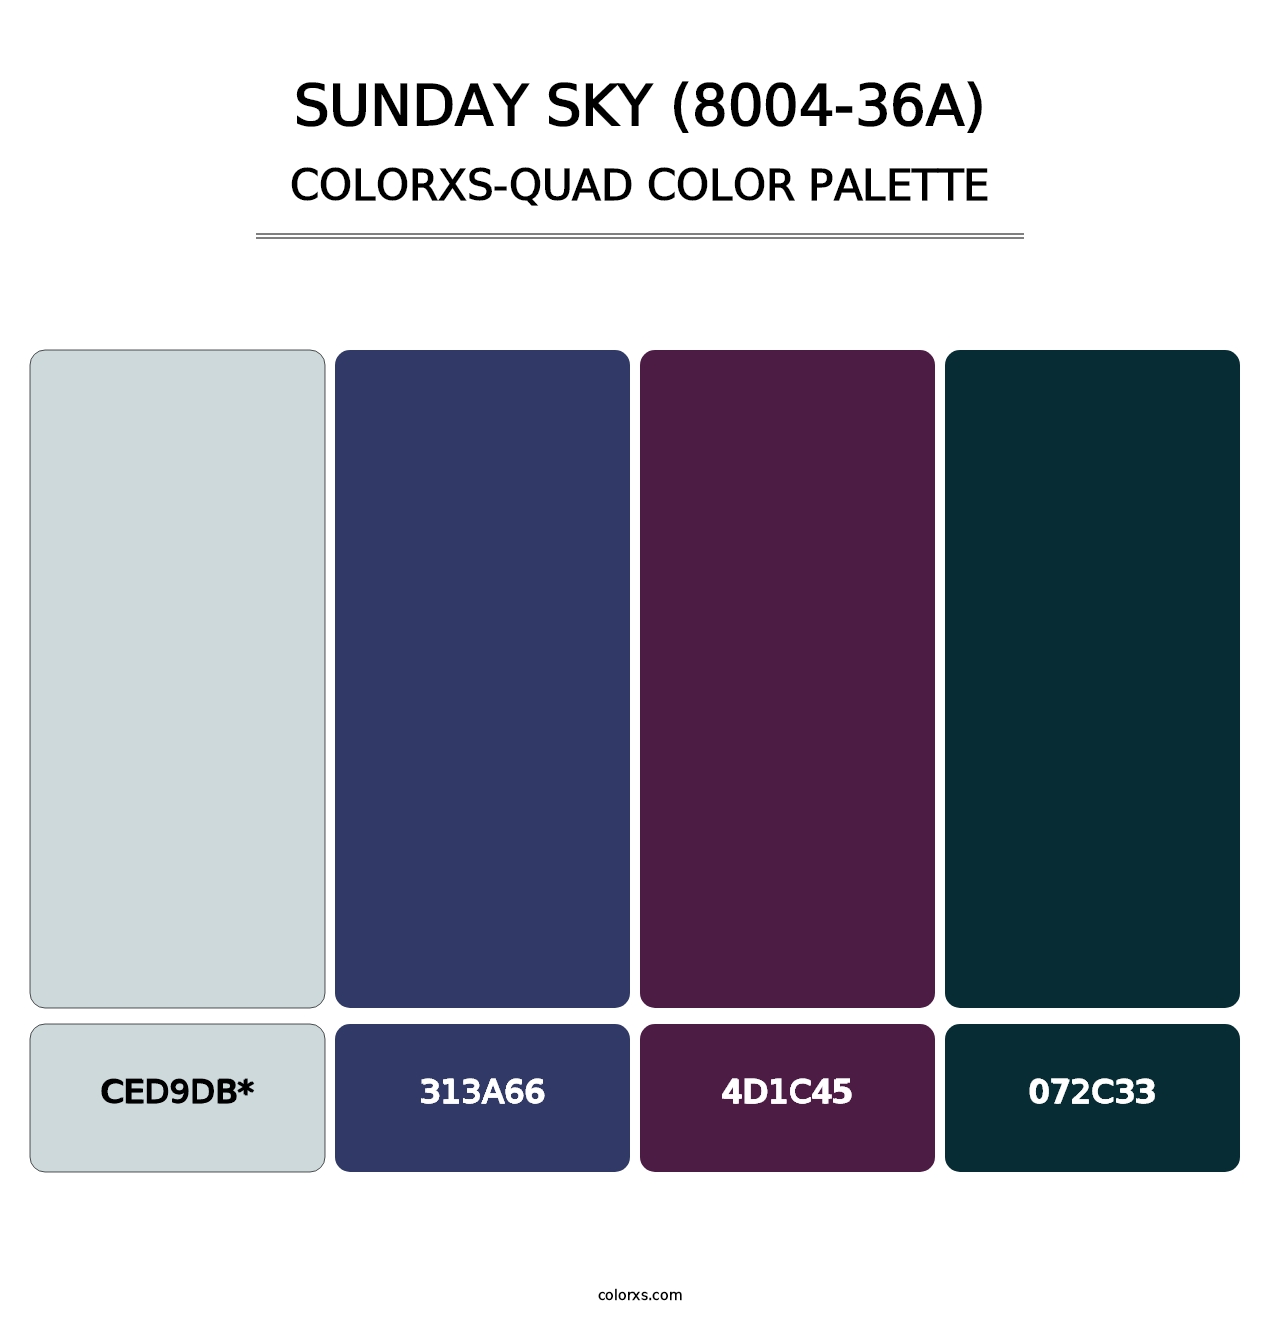 Sunday Sky (8004-36A) - Colorxs Quad Palette